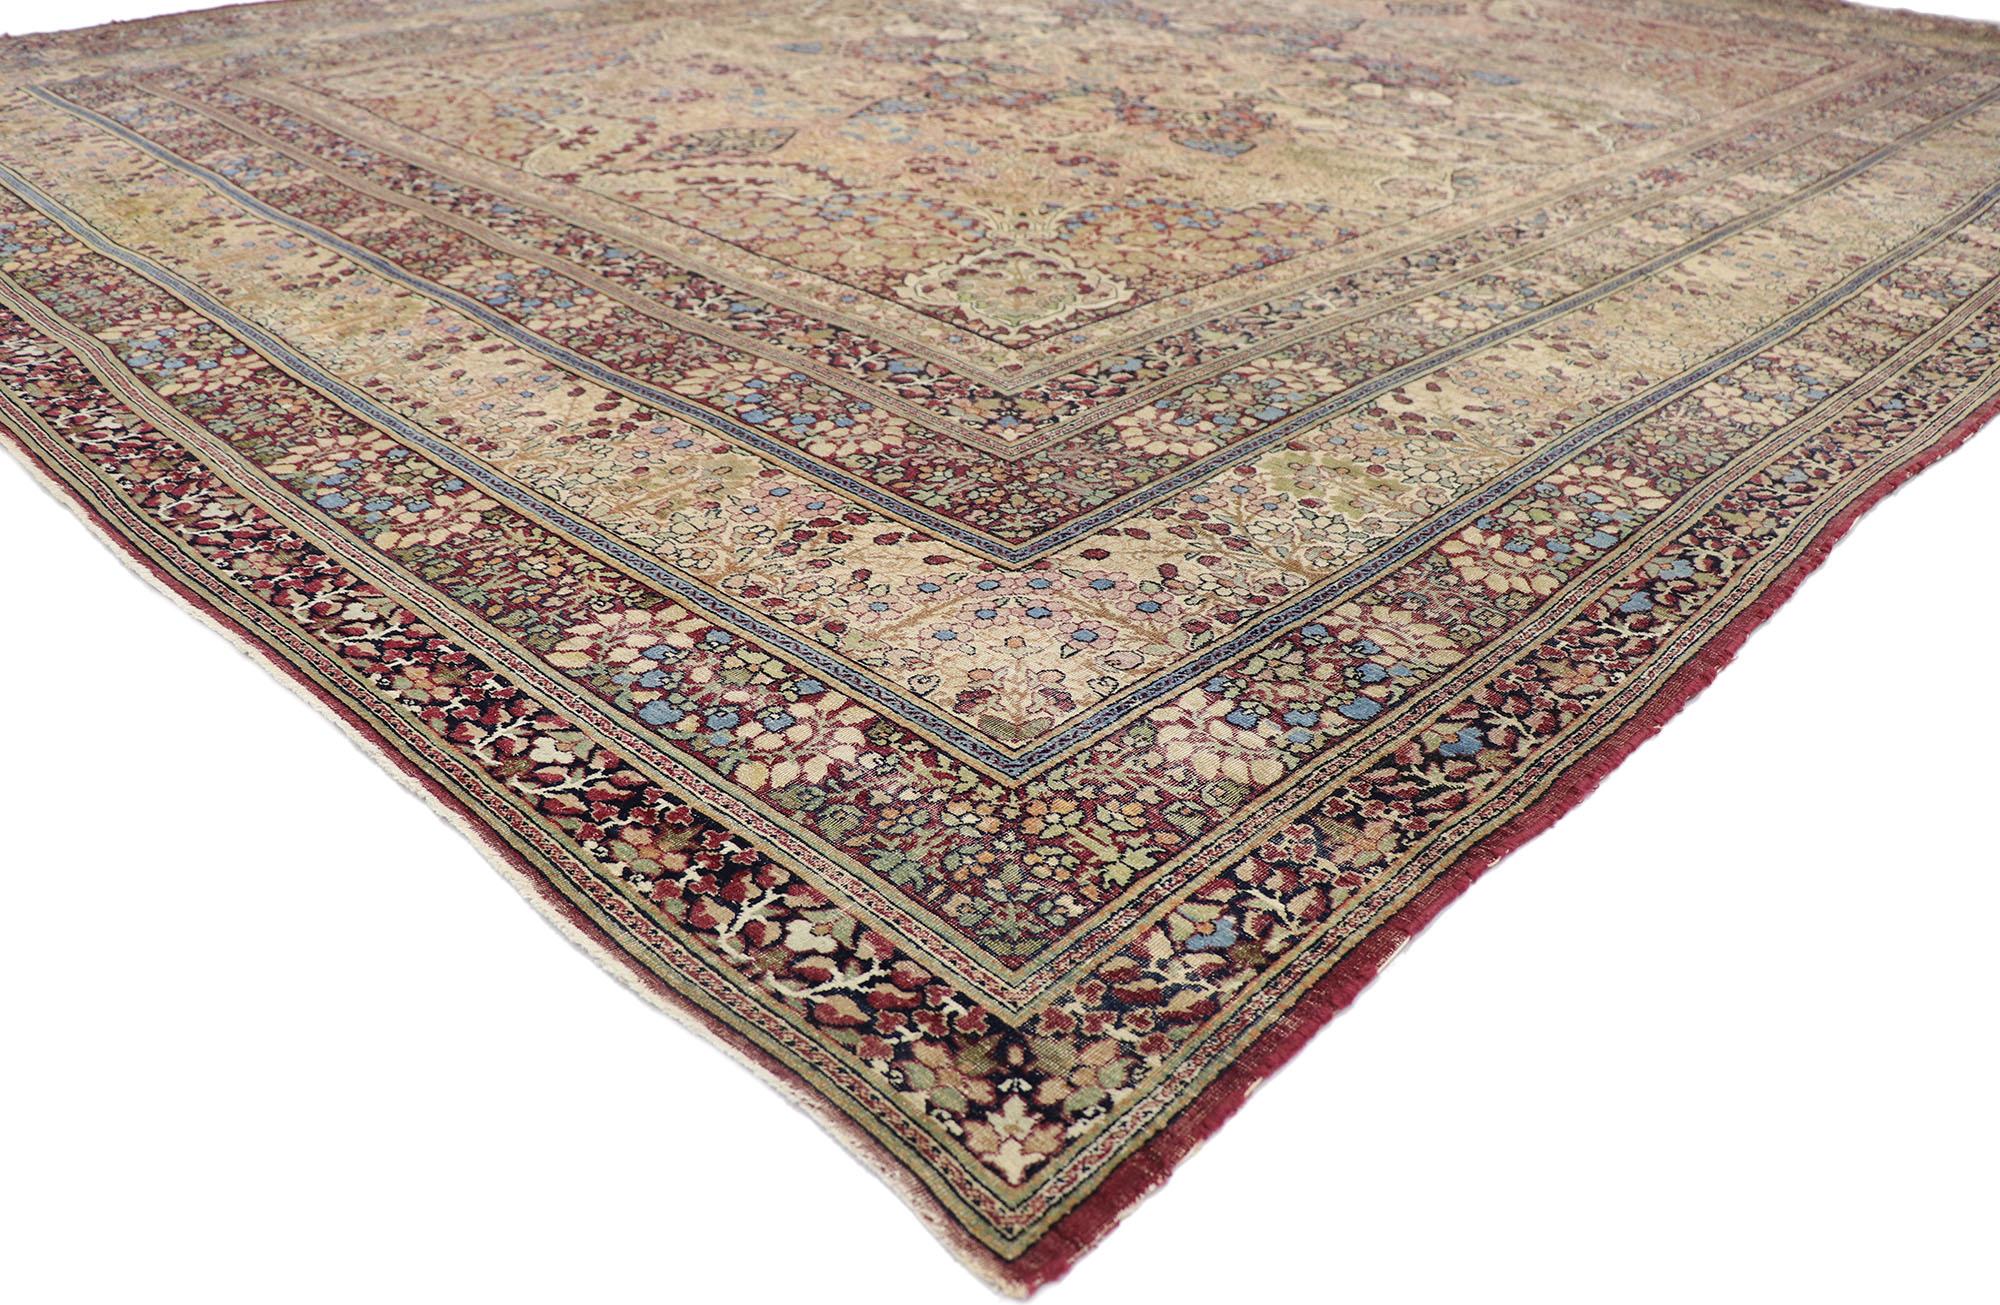 78080 antique tapis Persan Lavar Kermanshah 10'03 x 13'00. Avec son charme parfaitement usé et sa sensibilité rustique, ce tapis persan Lavar Kermanshah en laine nouée à la main et usée à l'ancienne prendra un aspect vieilli qui sera intemporel tout